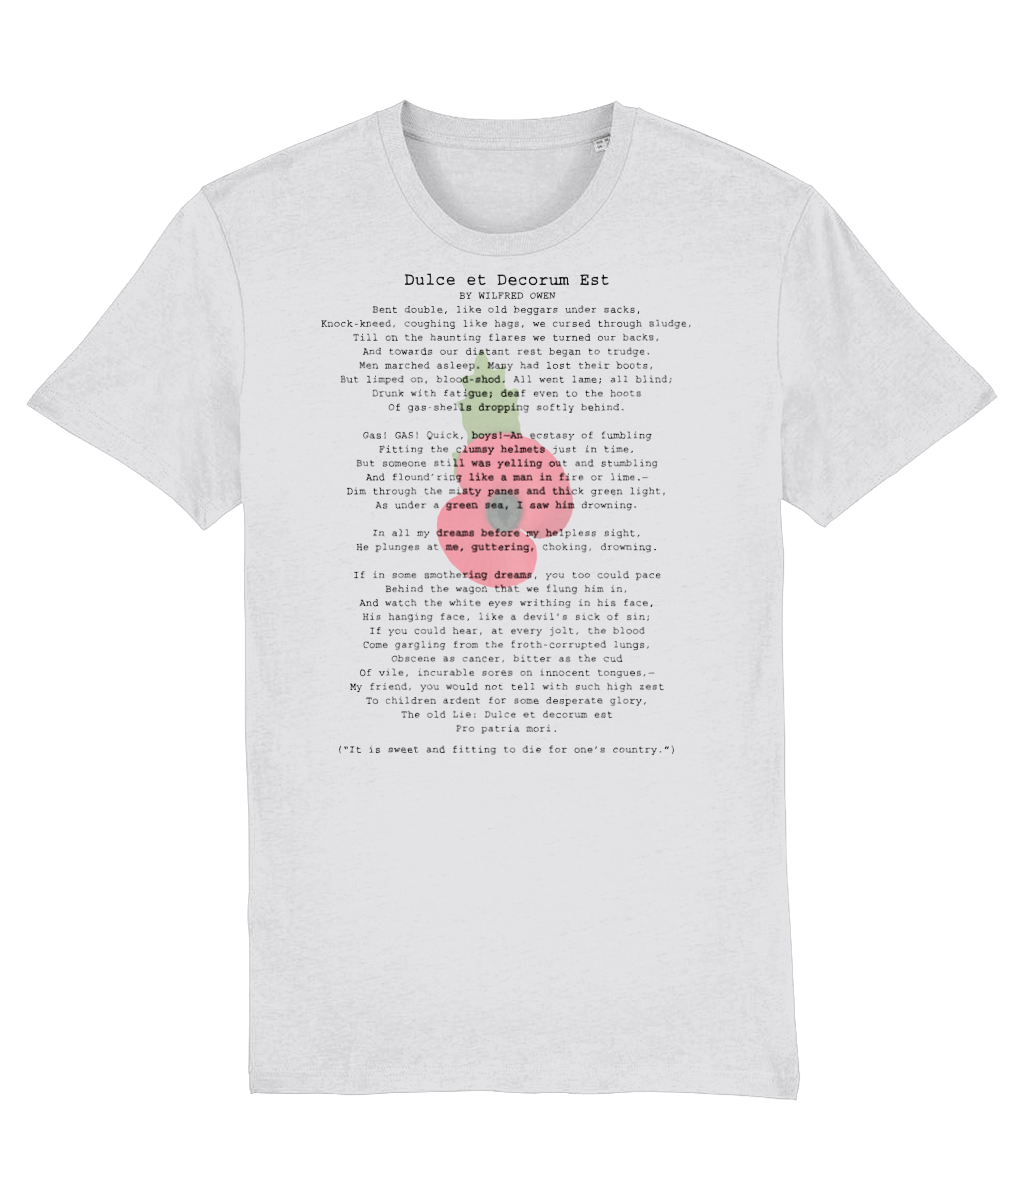 Wilfred Owen-Dulce et Decorum Est-Poetry-GAS T Shirts-P001